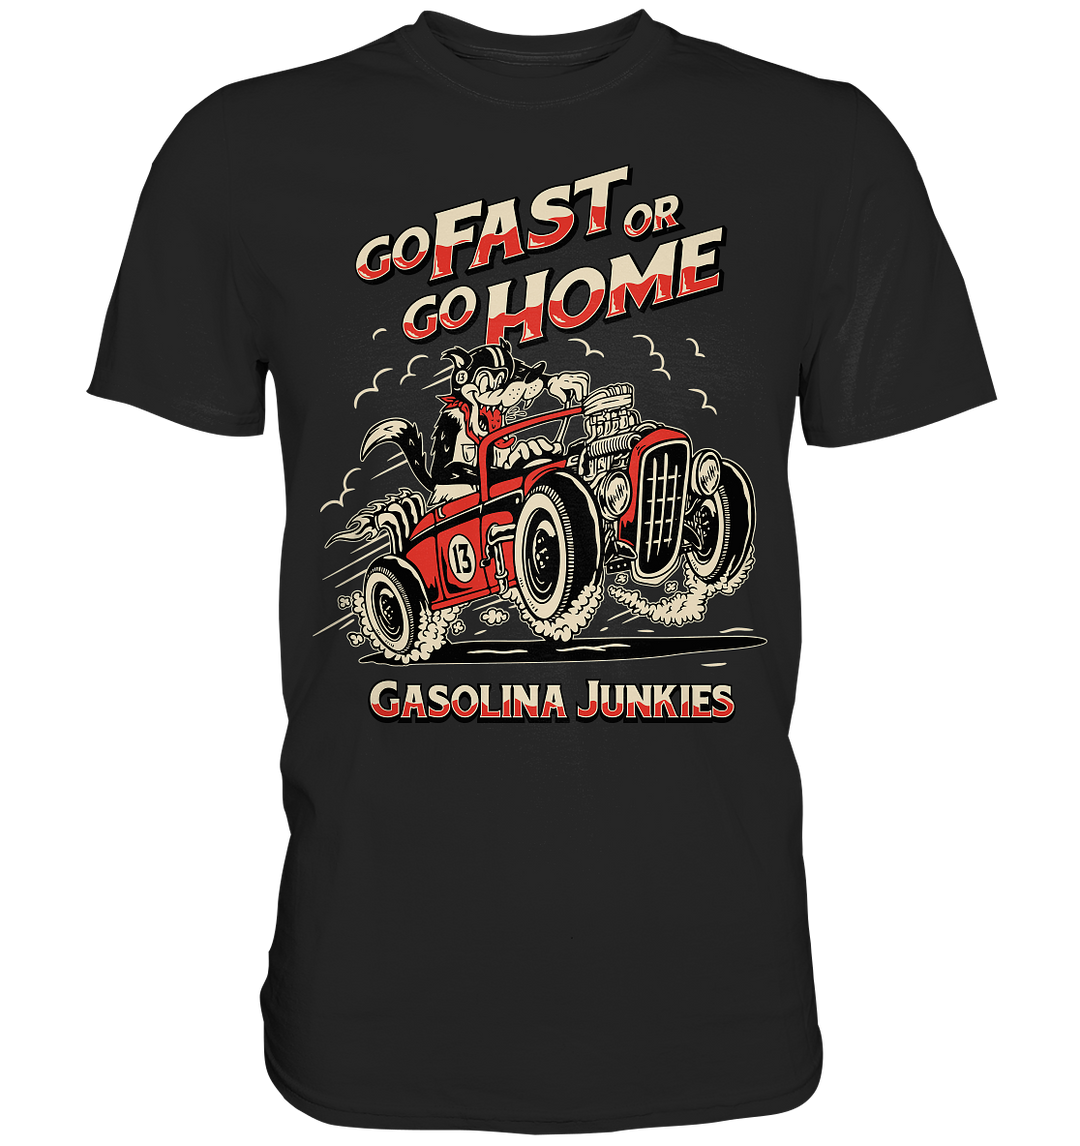 Go fast or go home - Premium Shirt